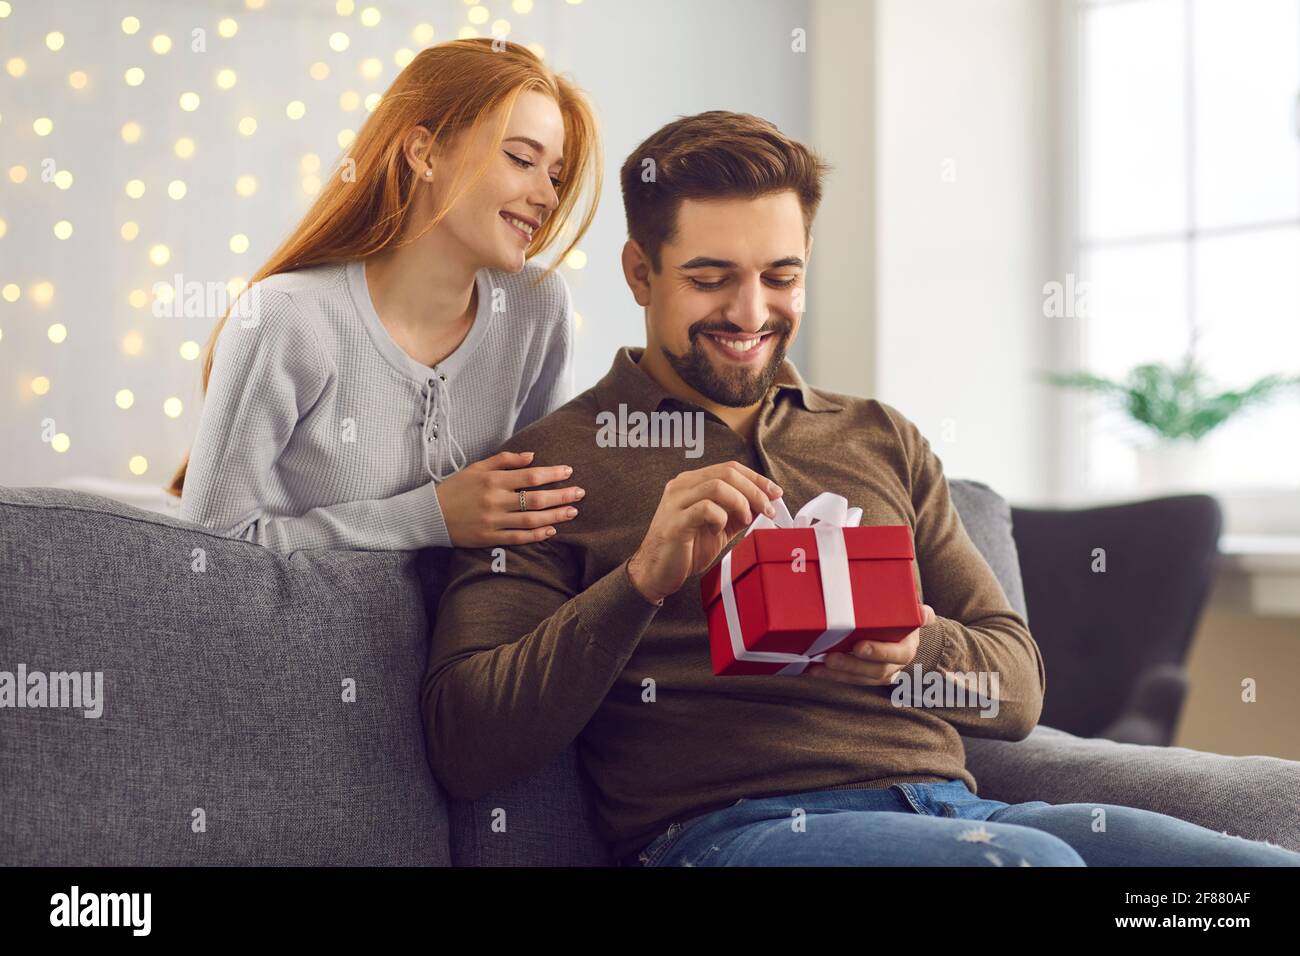 Joven hombre feliz novio abriendo la caja de regalo de su amante novia sonriente Foto de stock